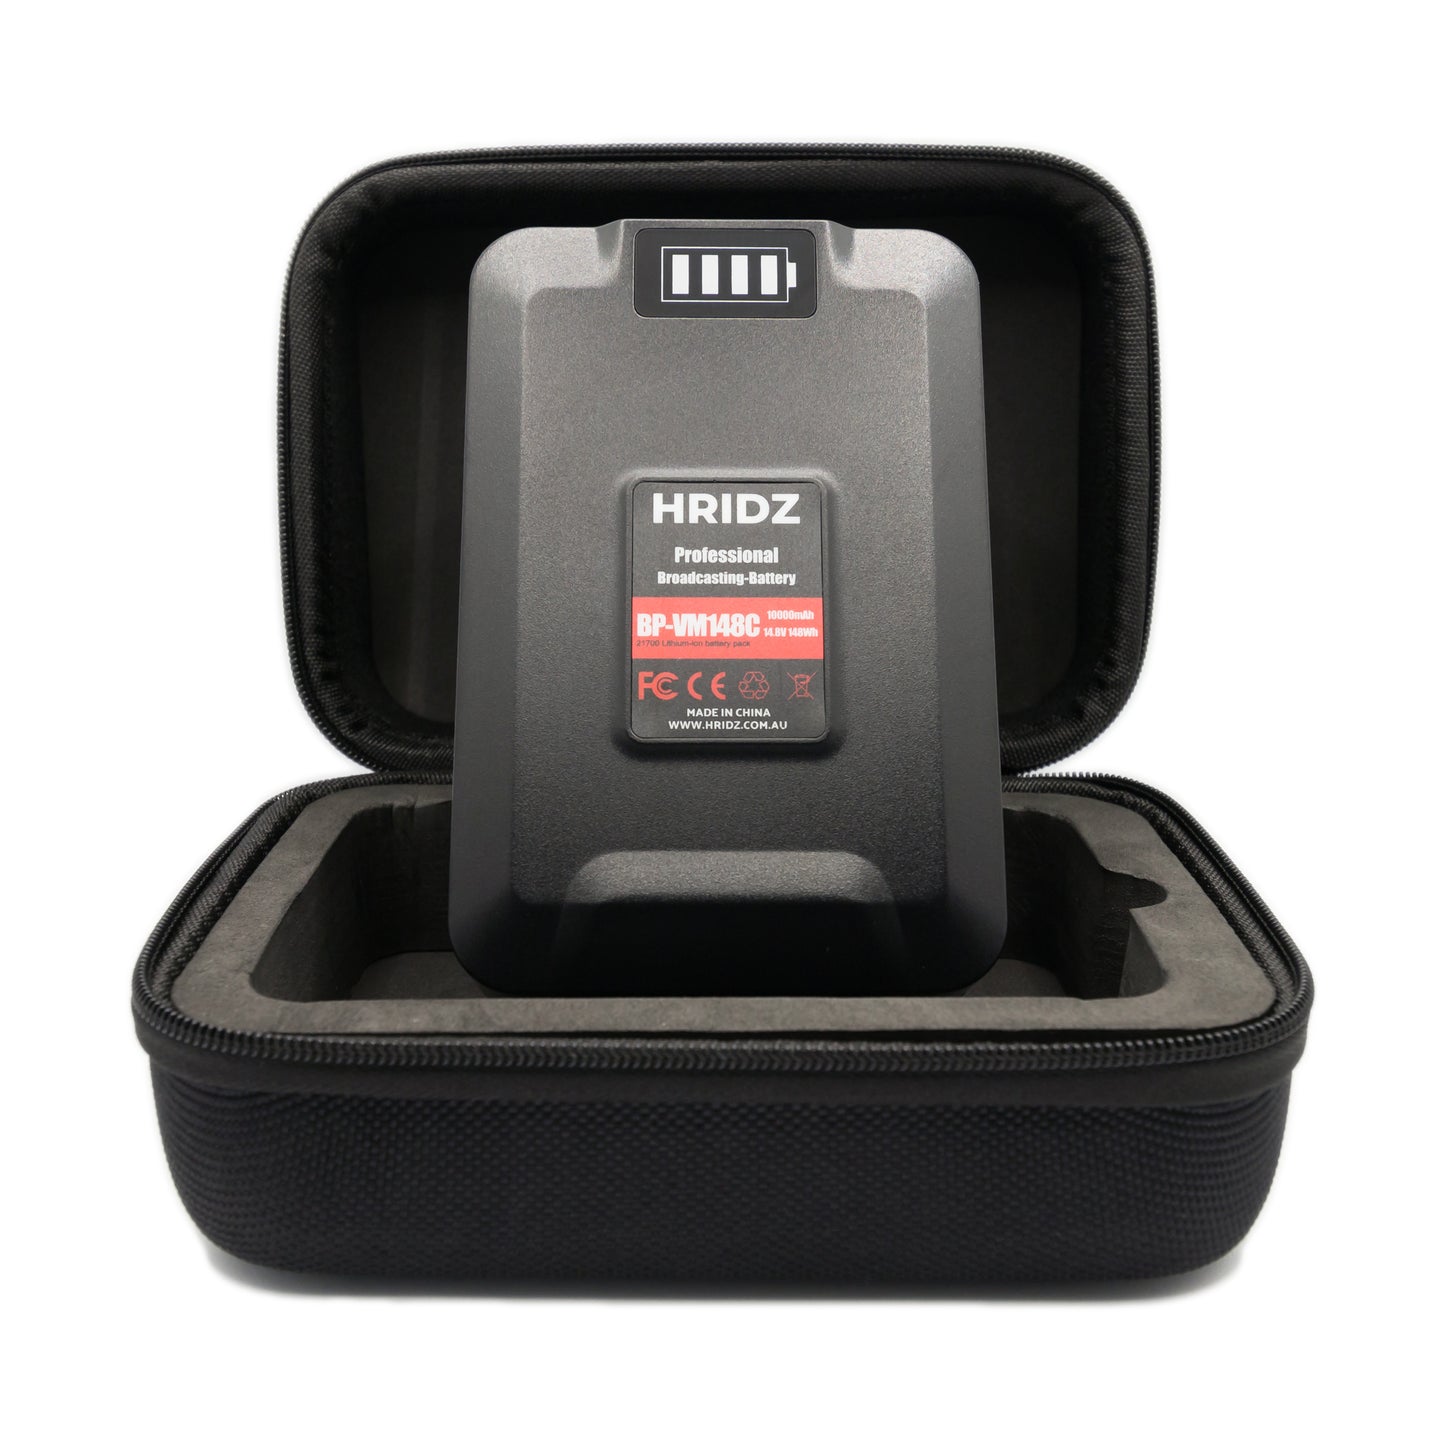 HRIDZ V-Mount V-Lock VM-BP148 Battery – 148Wh 14.8V 10000mAh for Studio Video Production